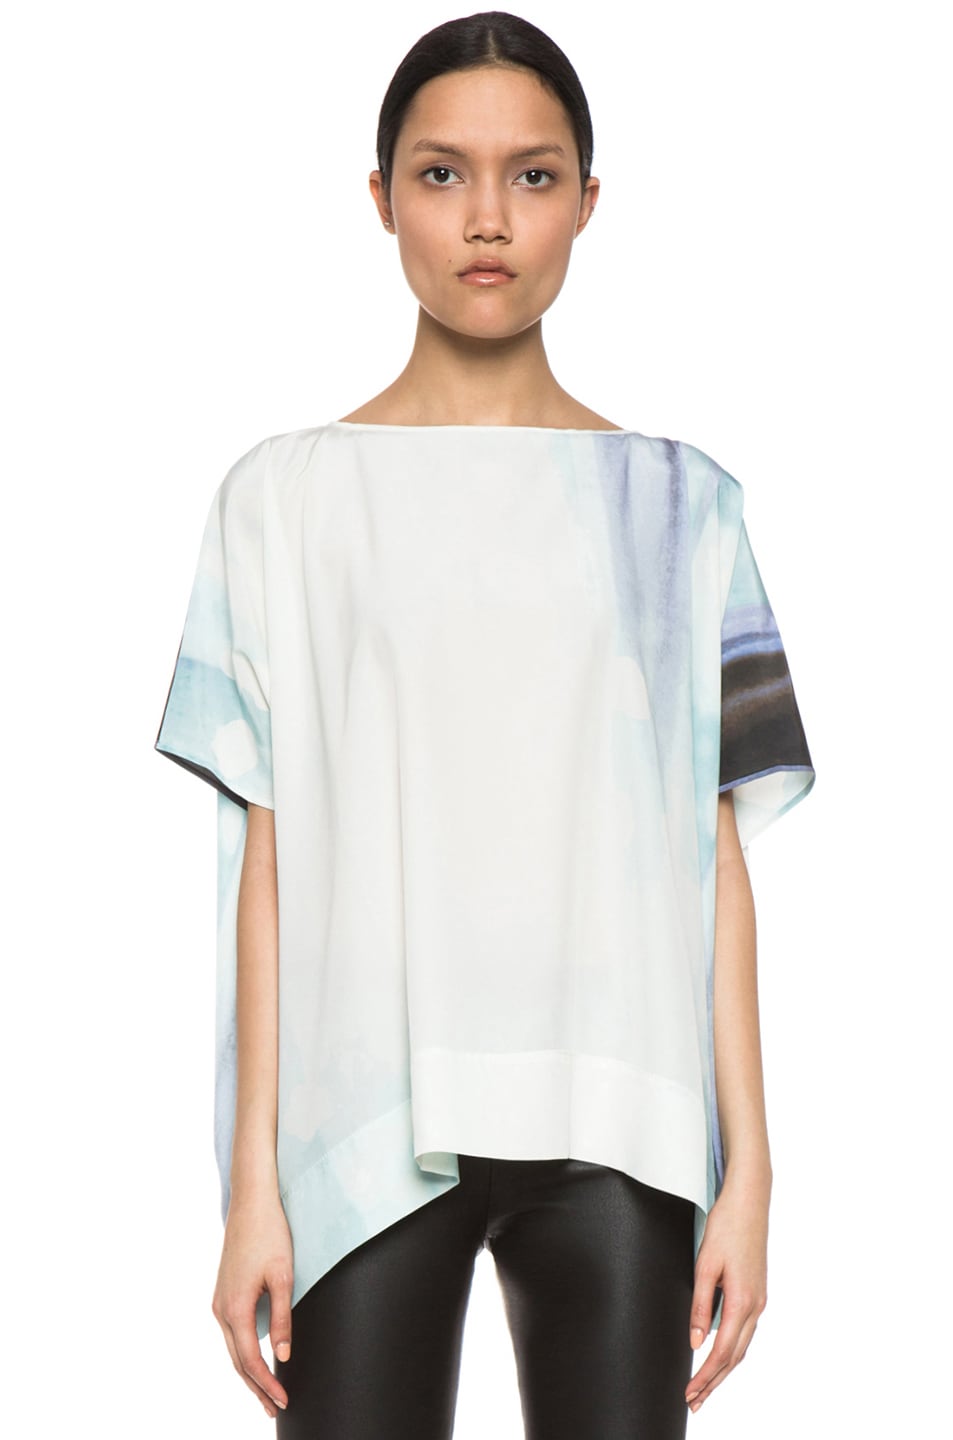 Diane von Furstenberg New Hanky Silk Top in Ethereal | FWRD